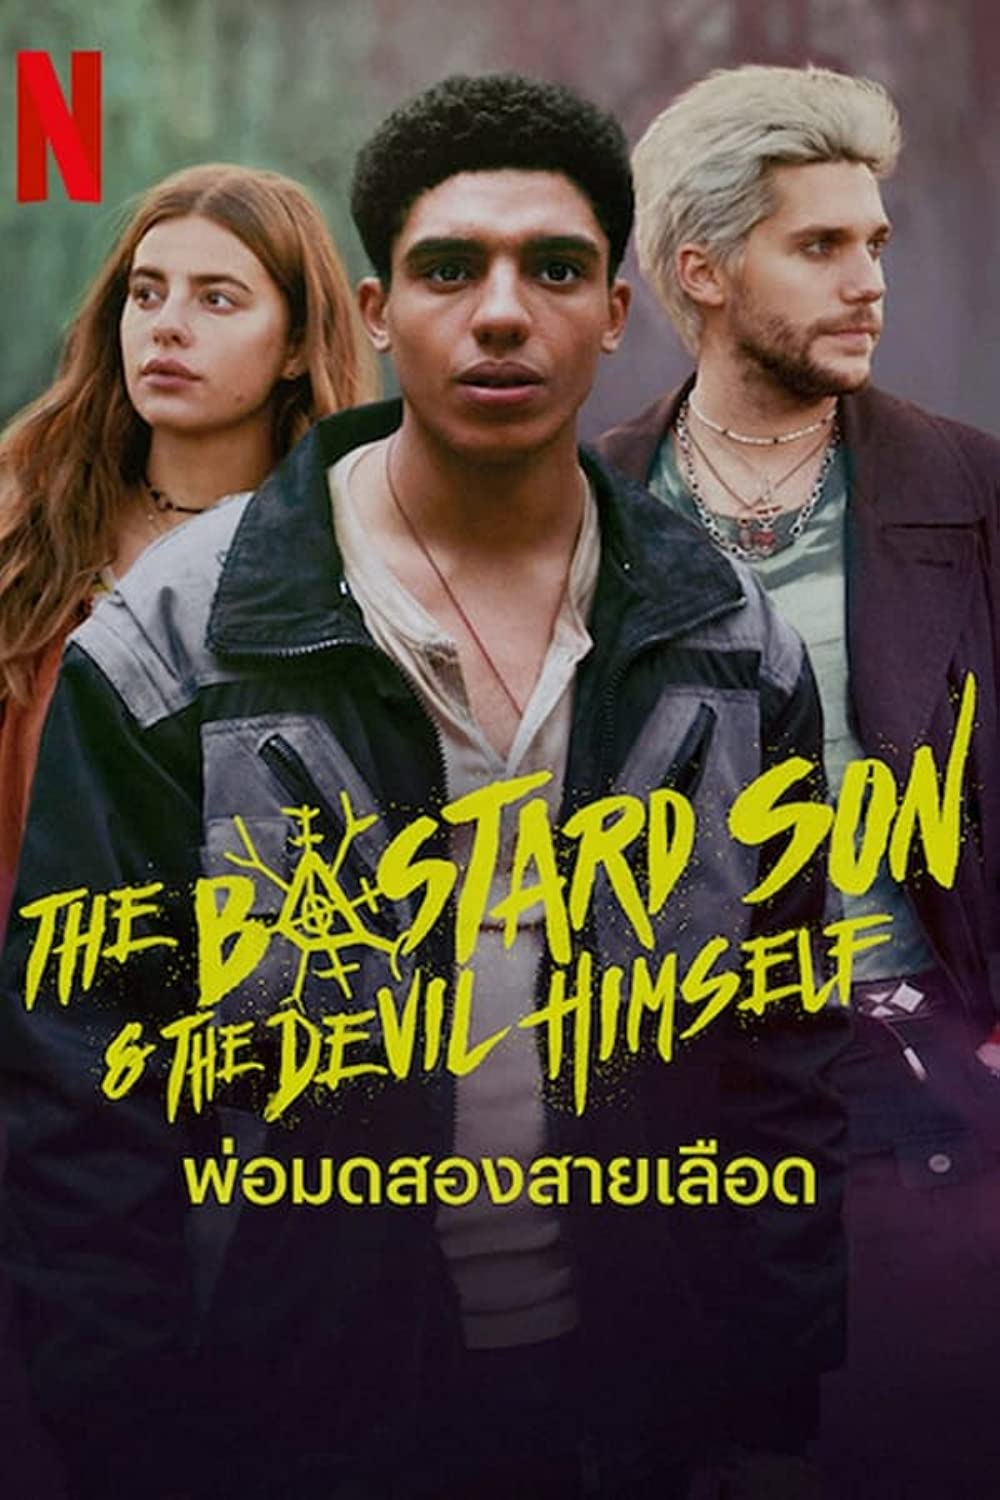 مسلسل The Bastard Son & The Devil Himself الموسم 1 الحلقة 2 مترجمة